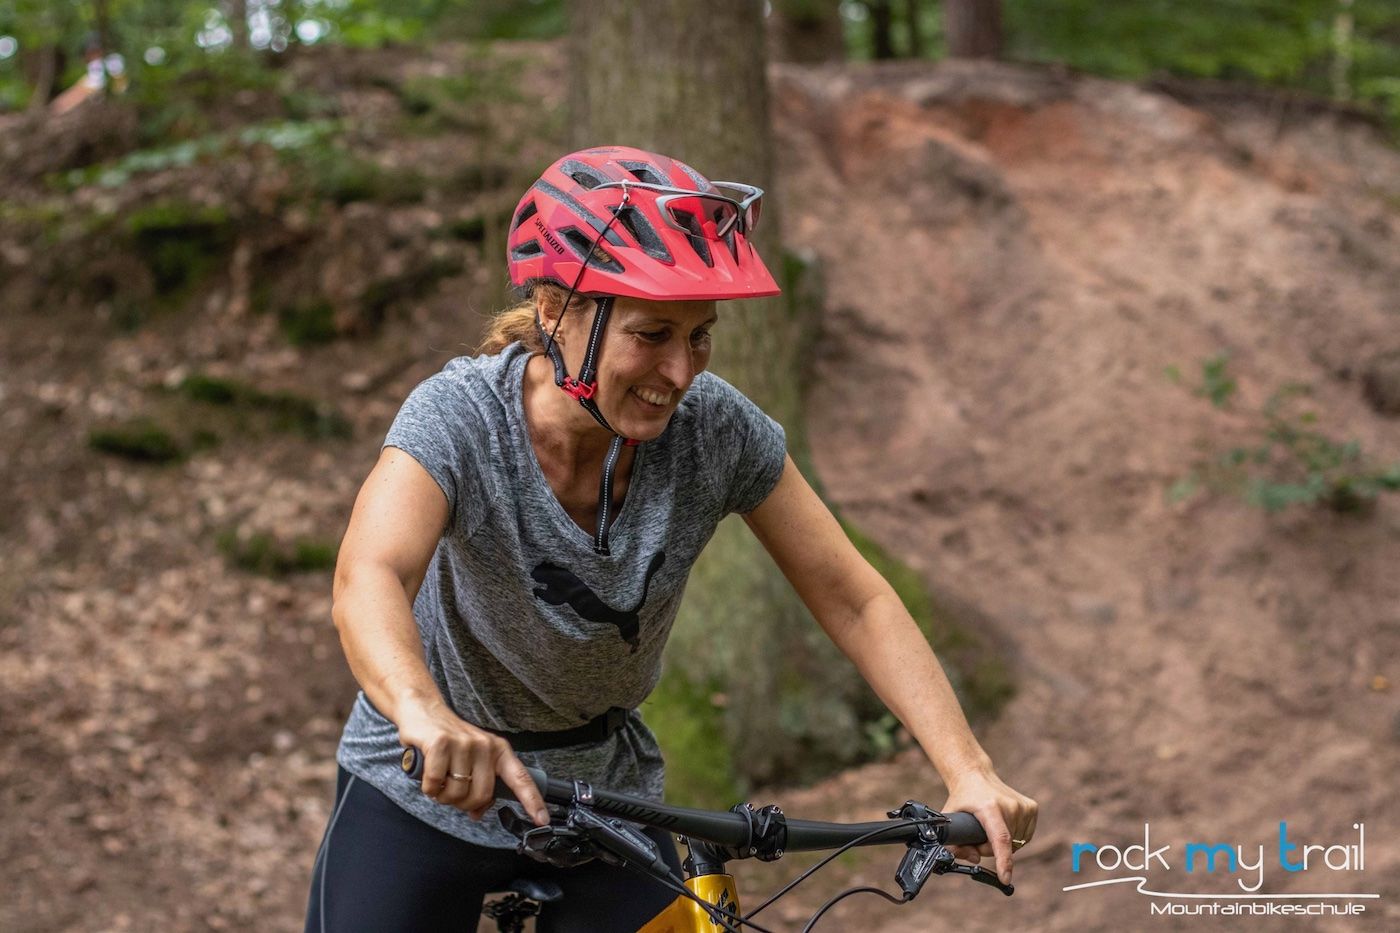 Mountainbike Frauen Kurs in Frankfurt | Oberursel- Rock my Trail Fahrtechnik Bikeschule